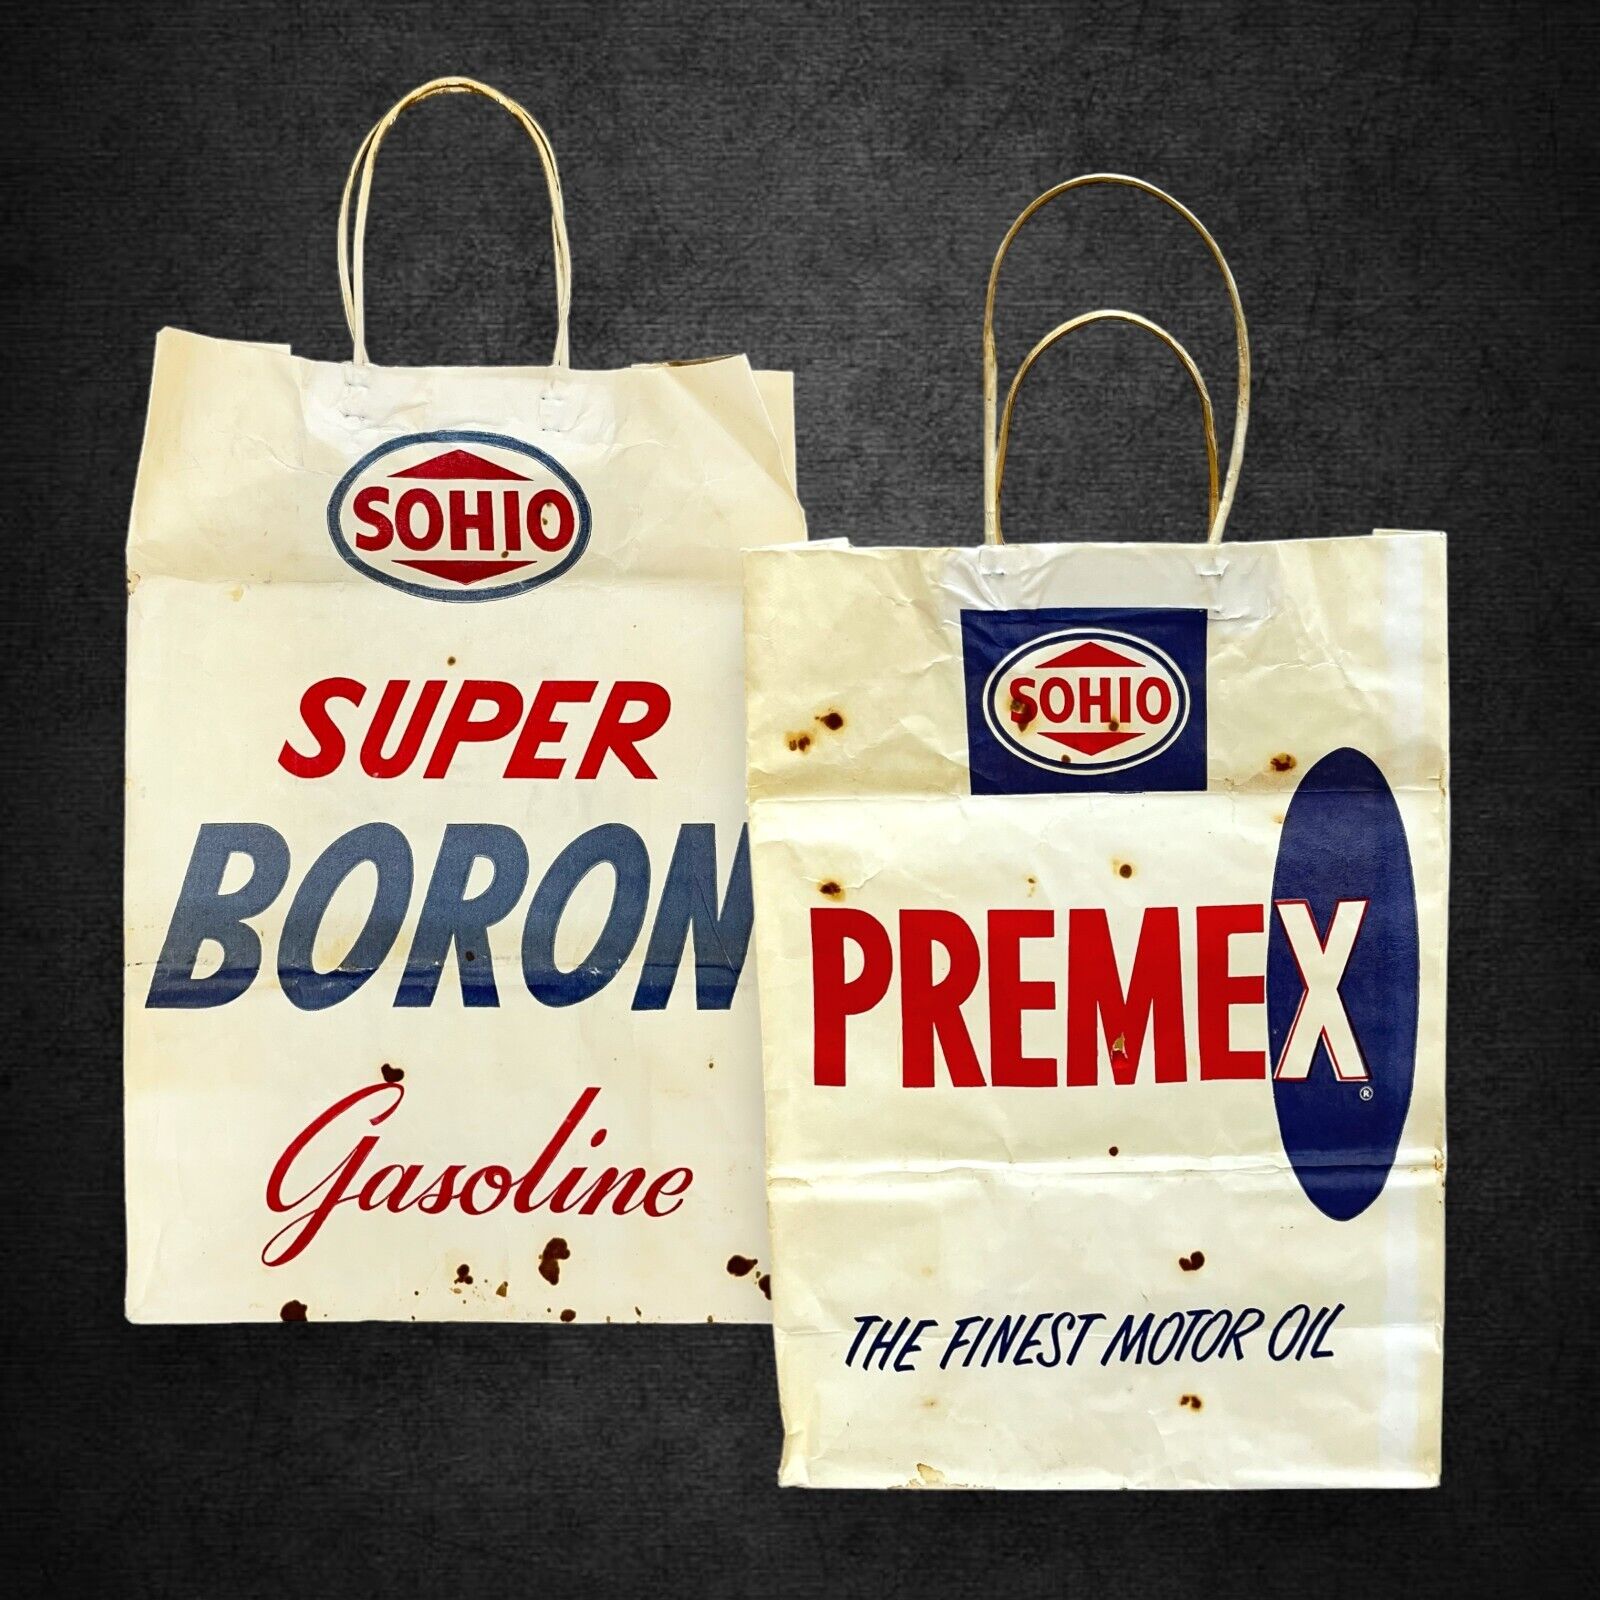 1960s Super Boron Gasoline Premex Motor Oil Sohio Paper Shop Bag Garage Decor